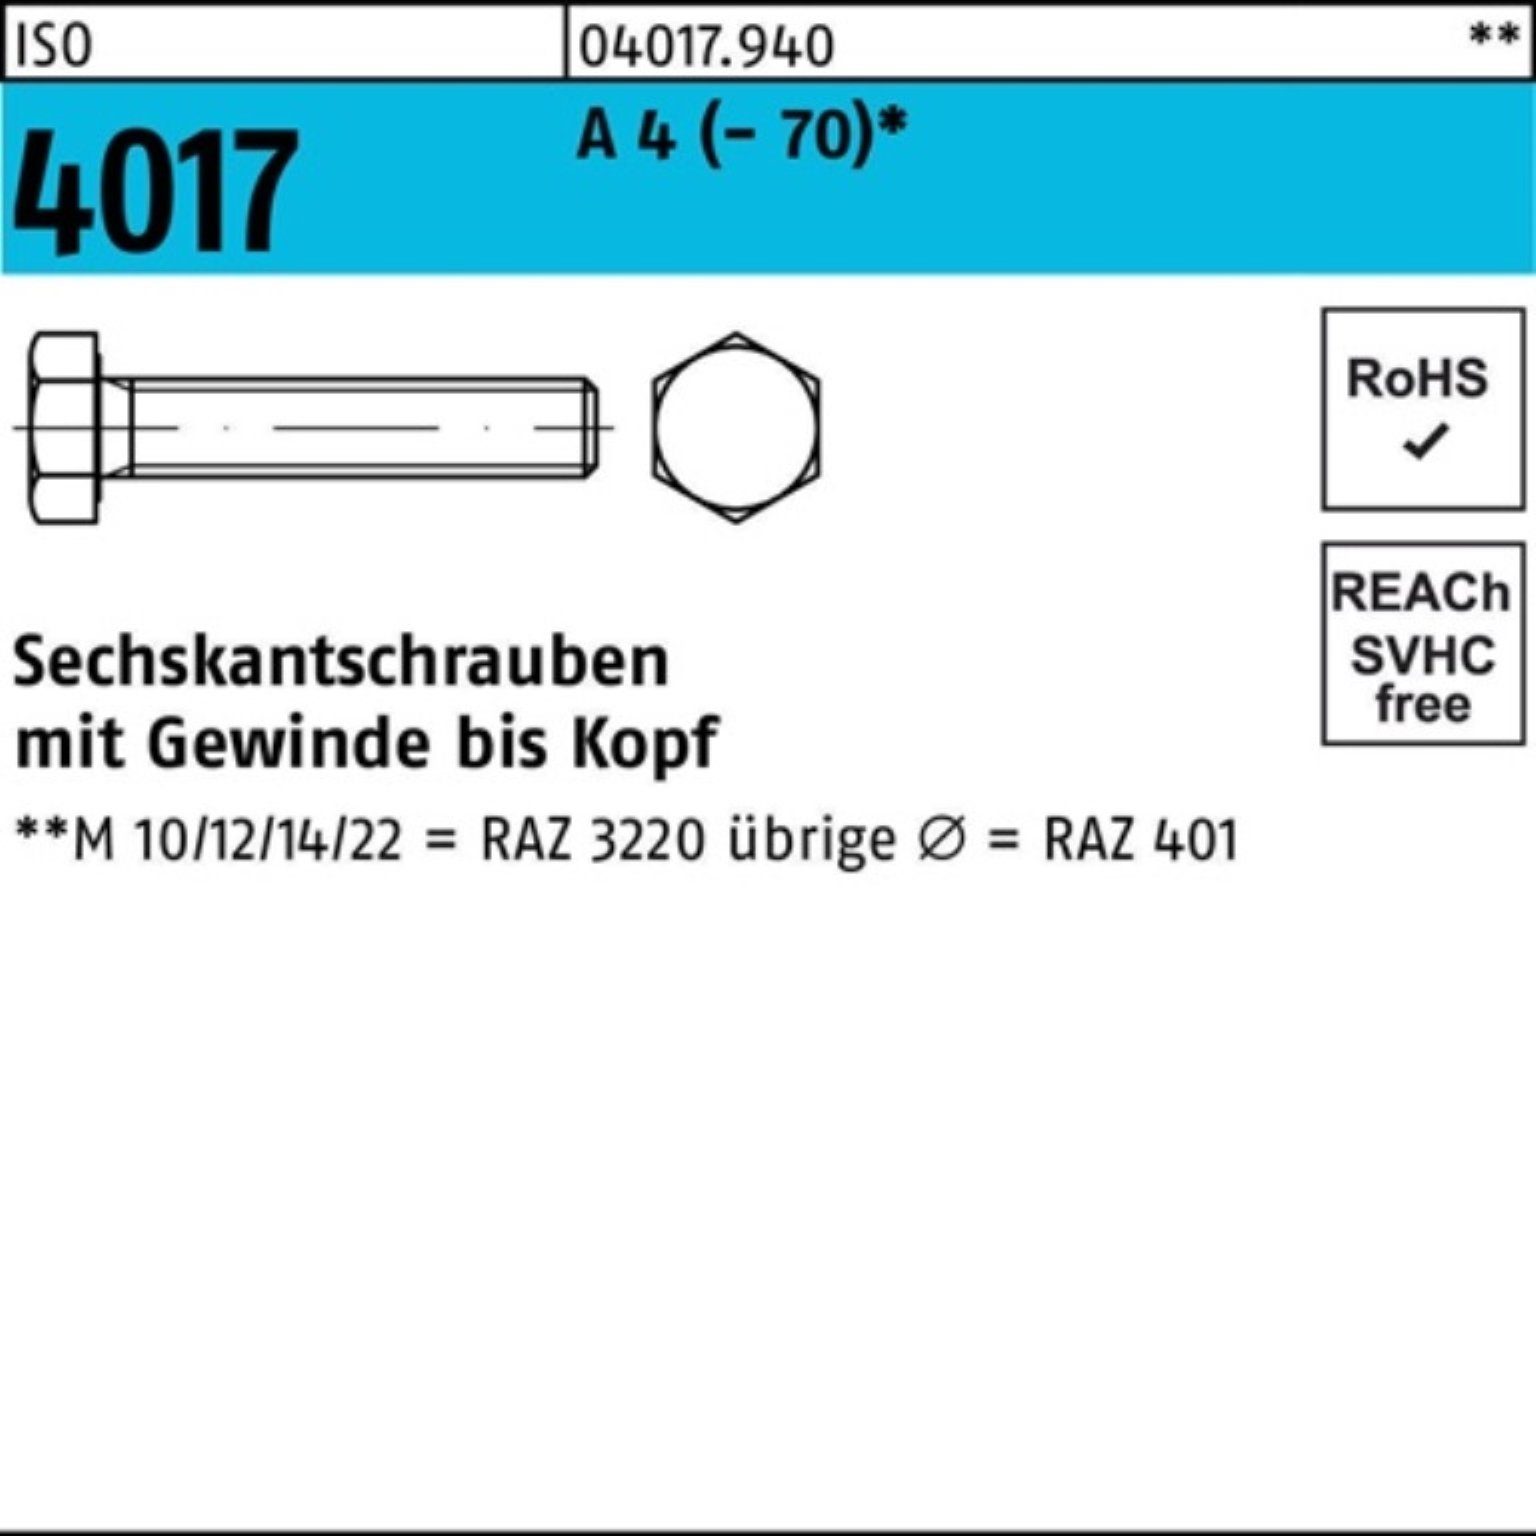 Bufab Sechskantschraube 100er Pack Sechskantschraube ISO 4017 VG M6x 10 A 4 (70) 100 Stück